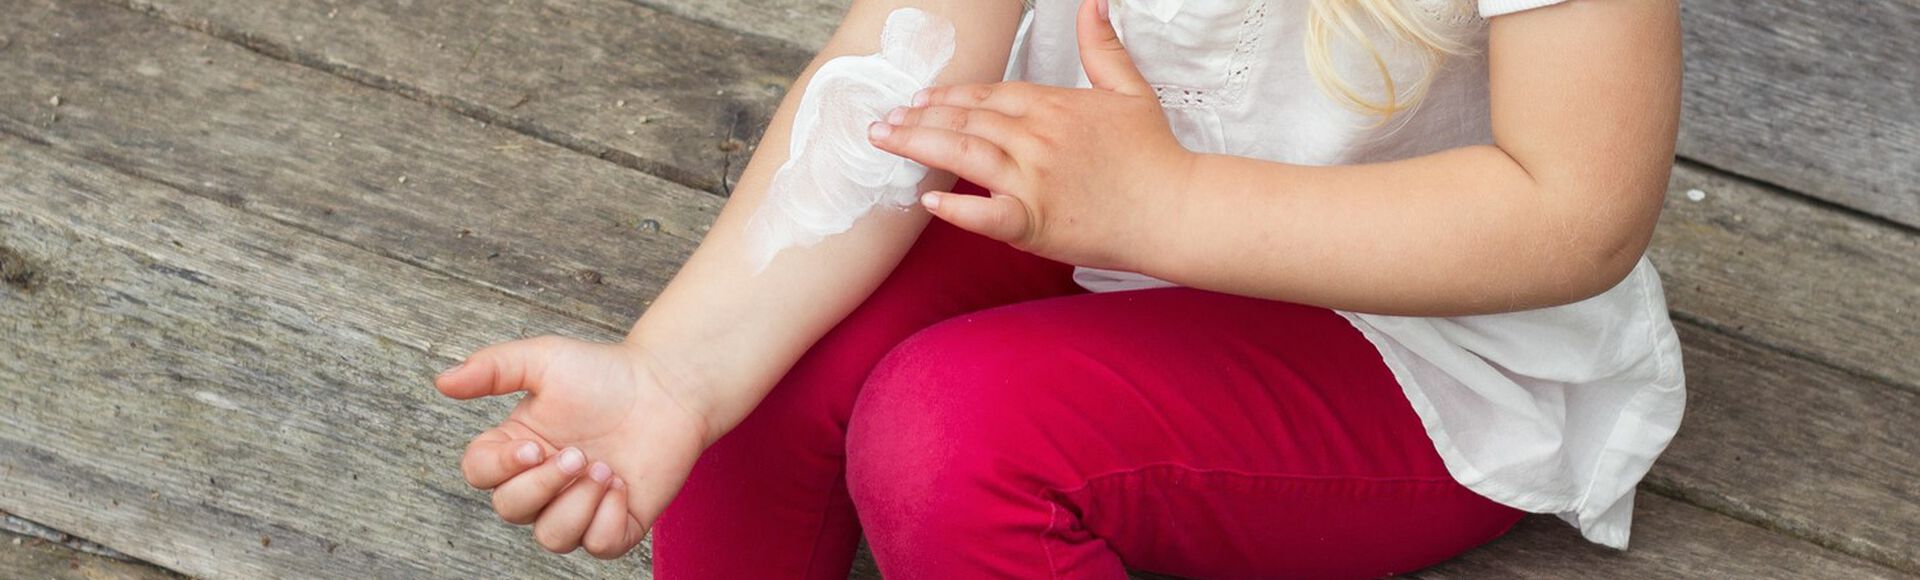 Pézinho de bebê com erupção cutânea vermelha  sintoma comum da dermatite atópica infantil